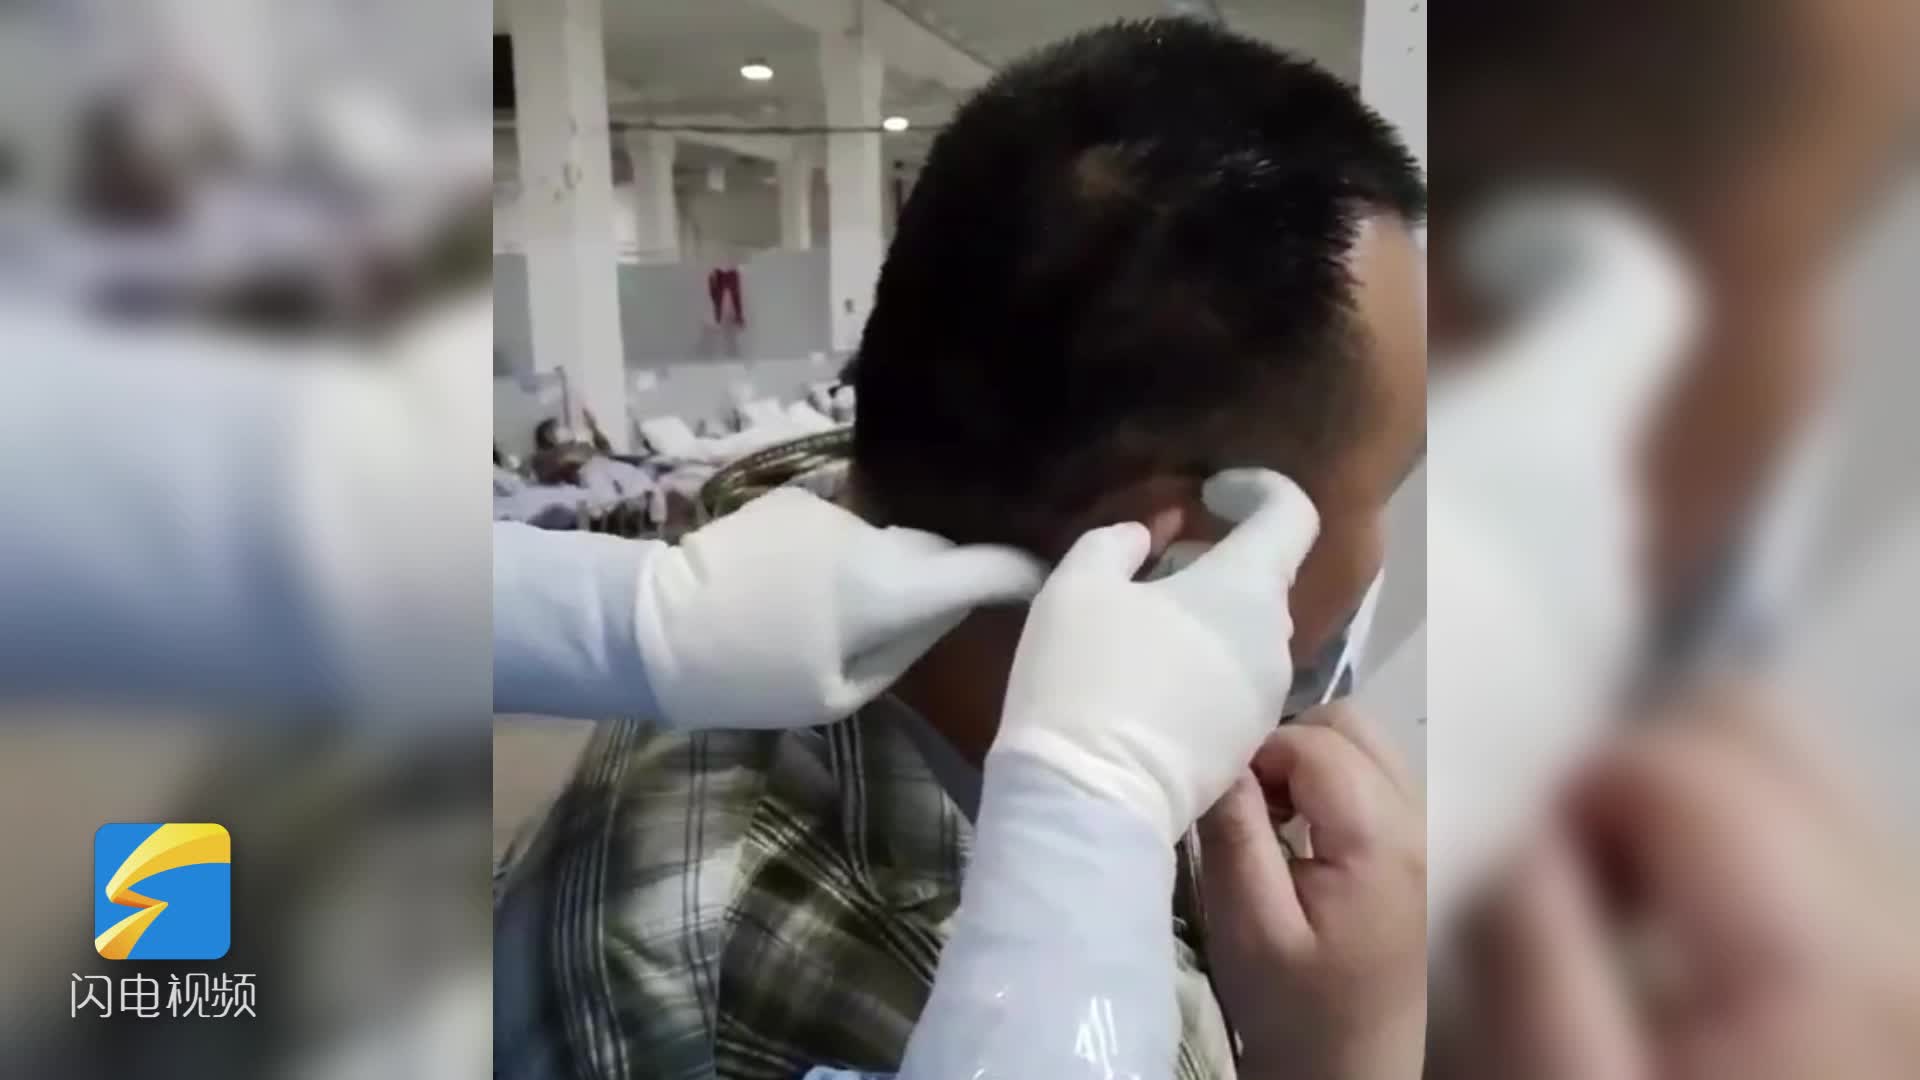 发明耳部减压小妙招 山东省援沪医疗队助患者告别口罩勒耳痛